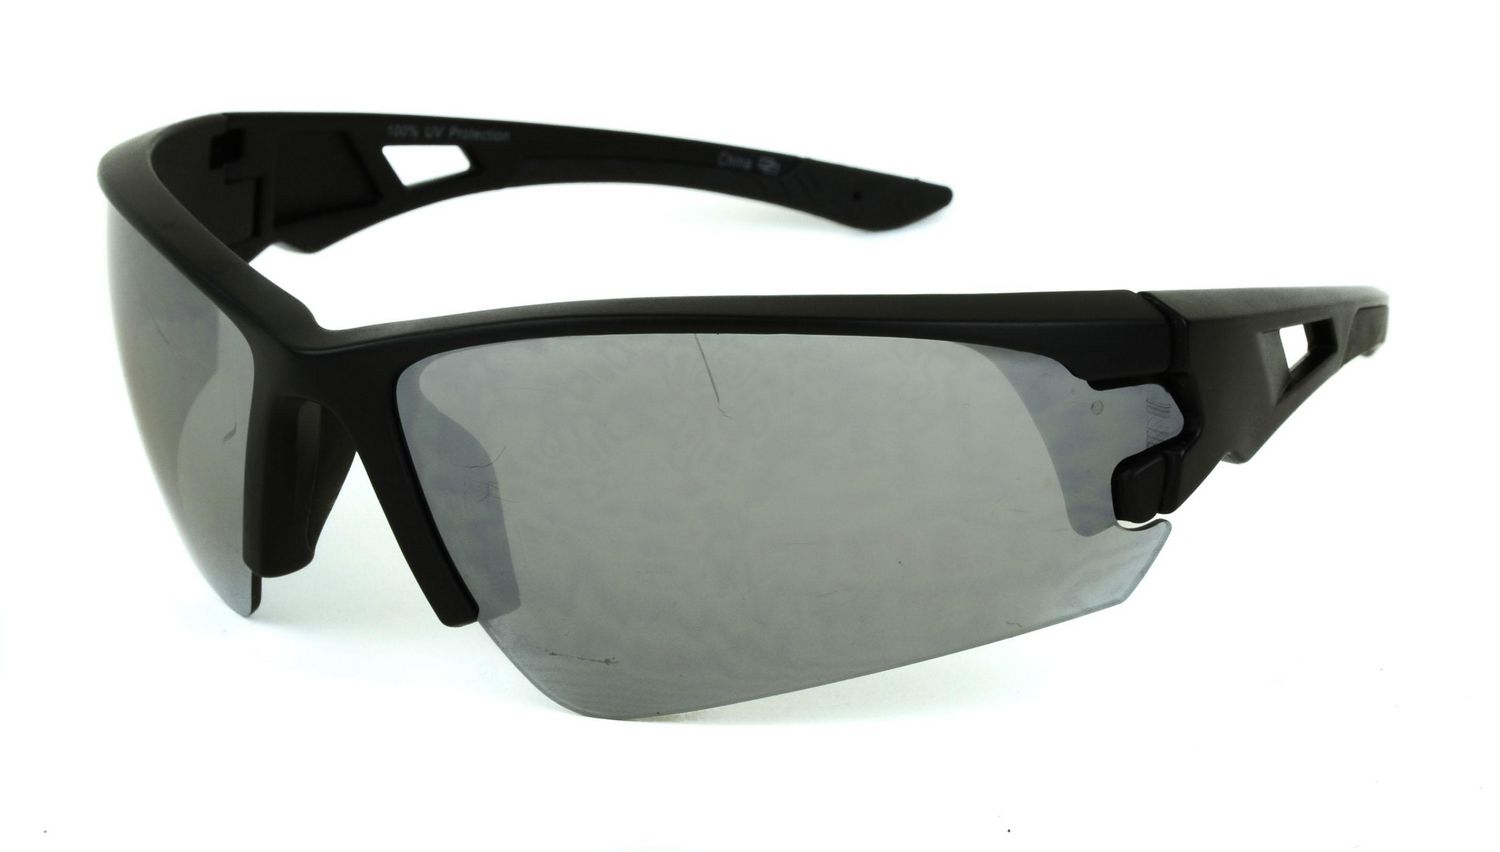 Genuine Dickies Silver Aviator Sunglasses 